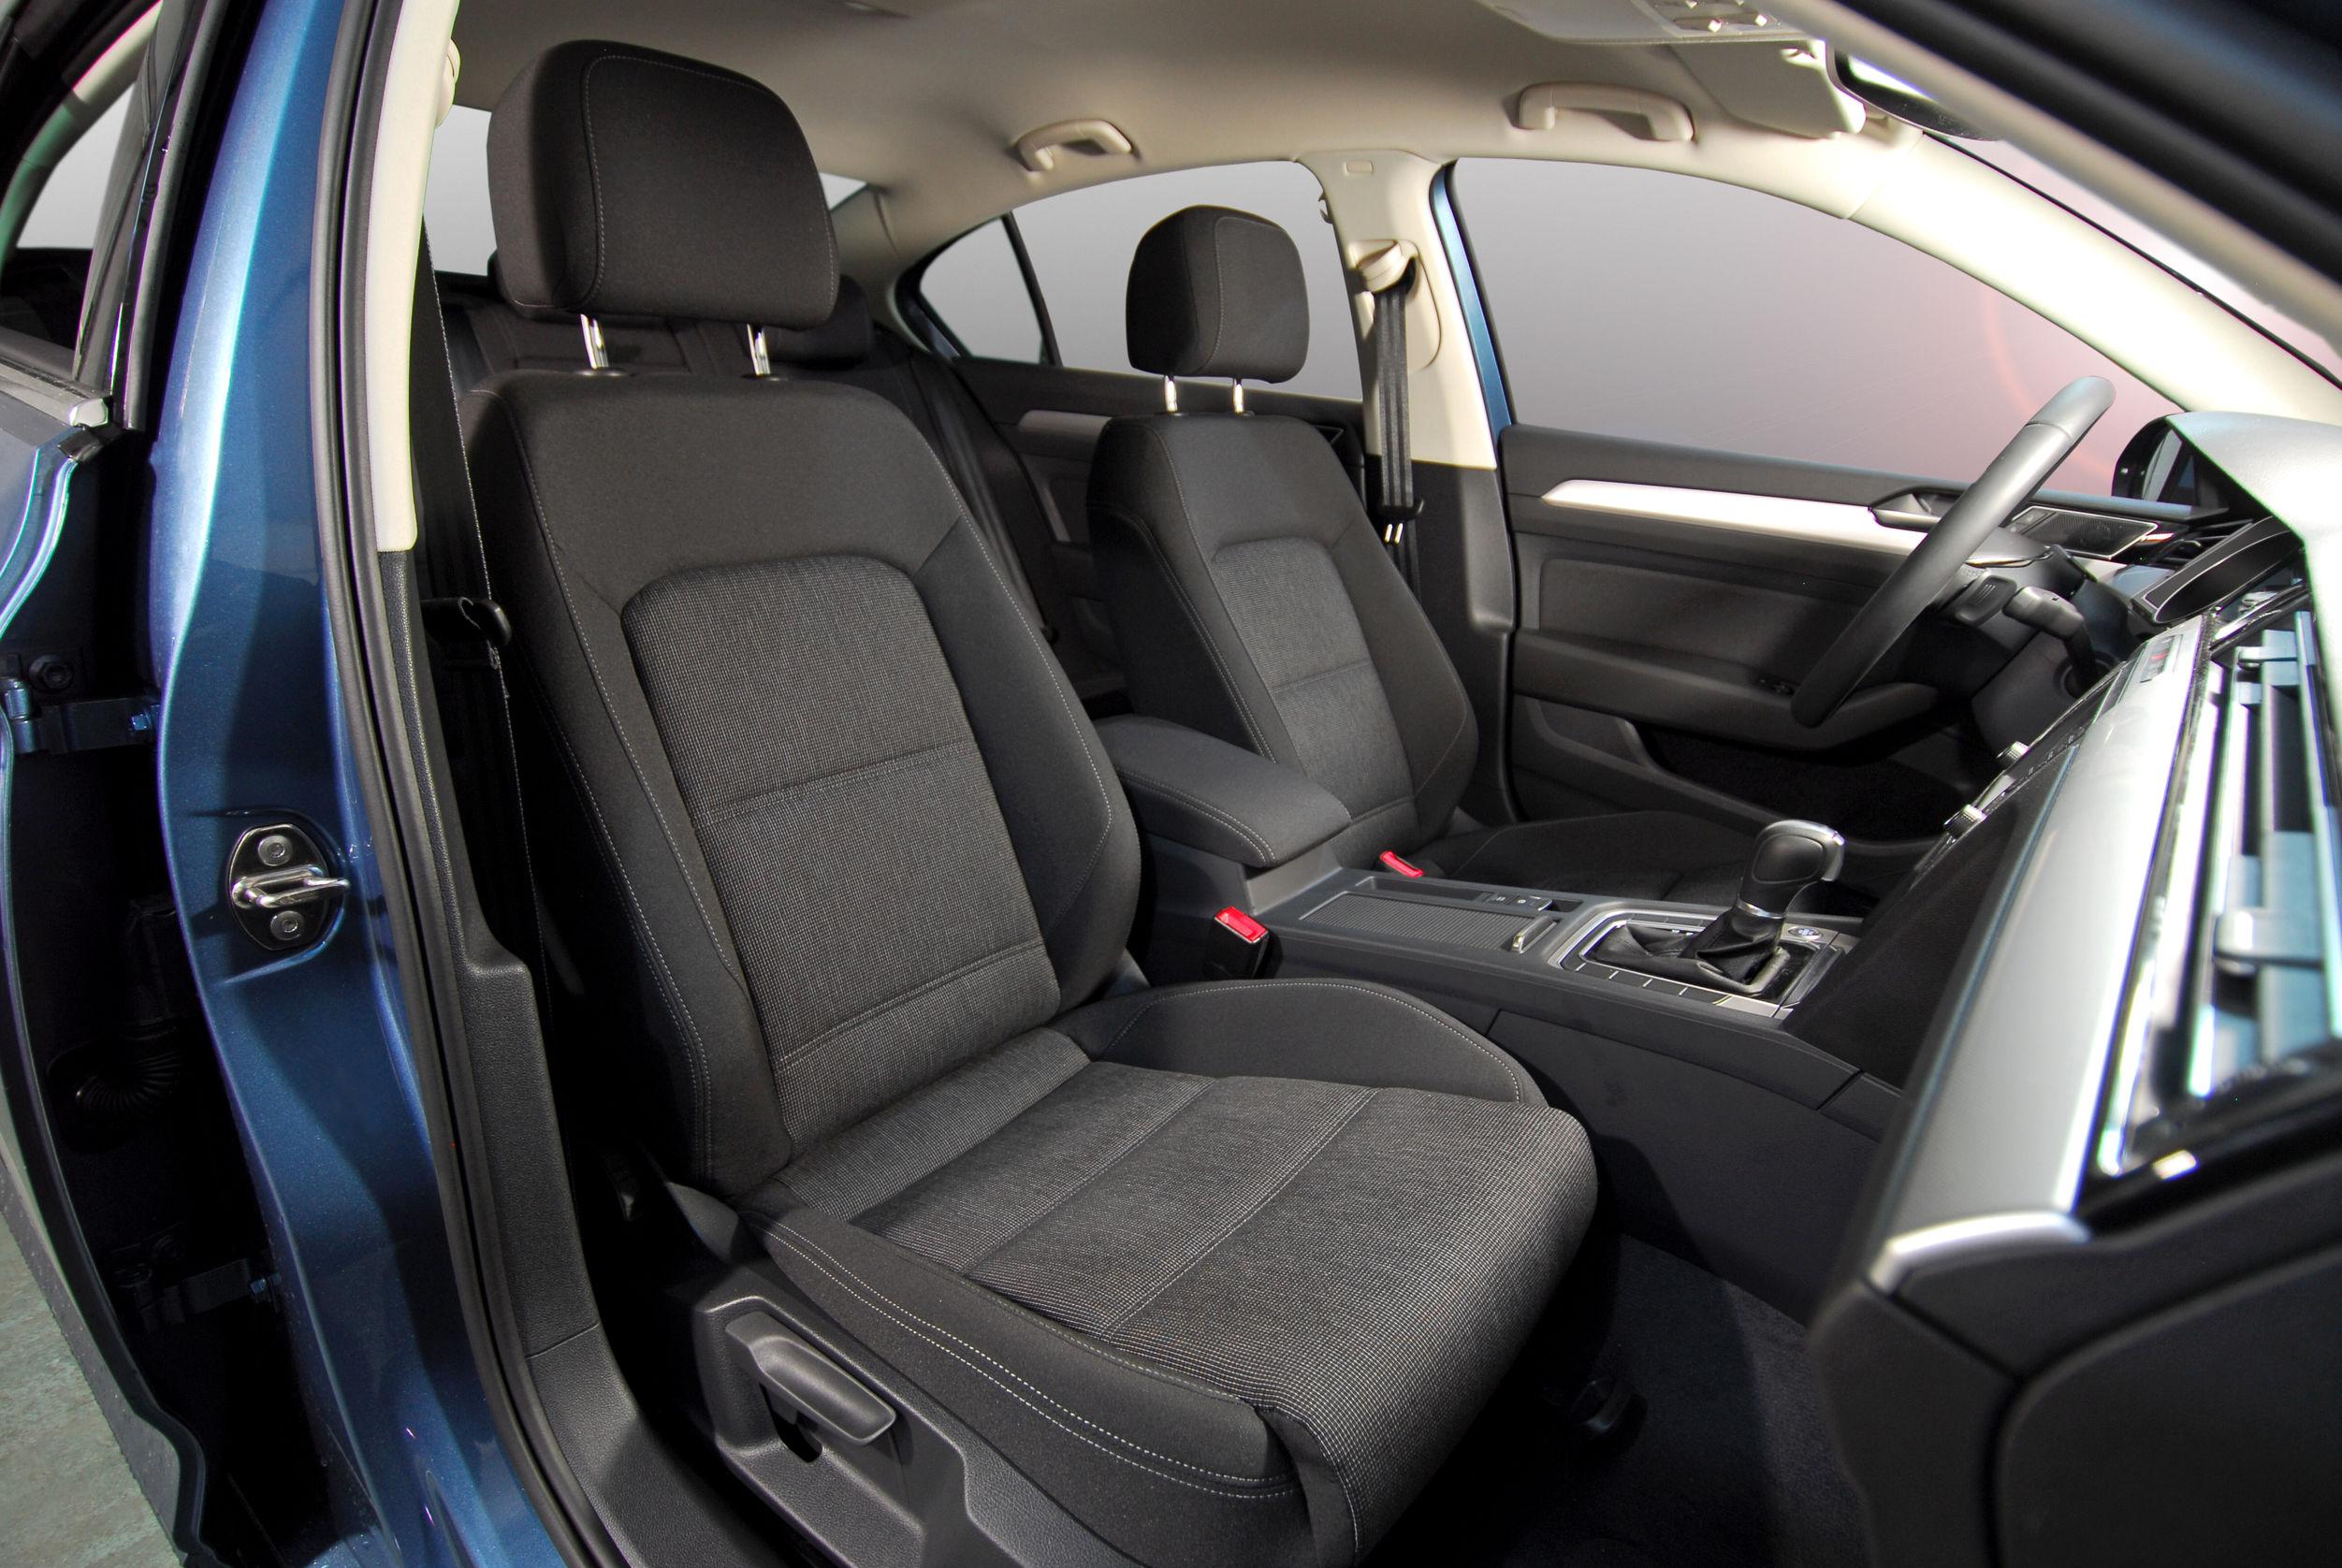 Sedili e cinture di sicurezza: i controlli da fare su un’auto usata